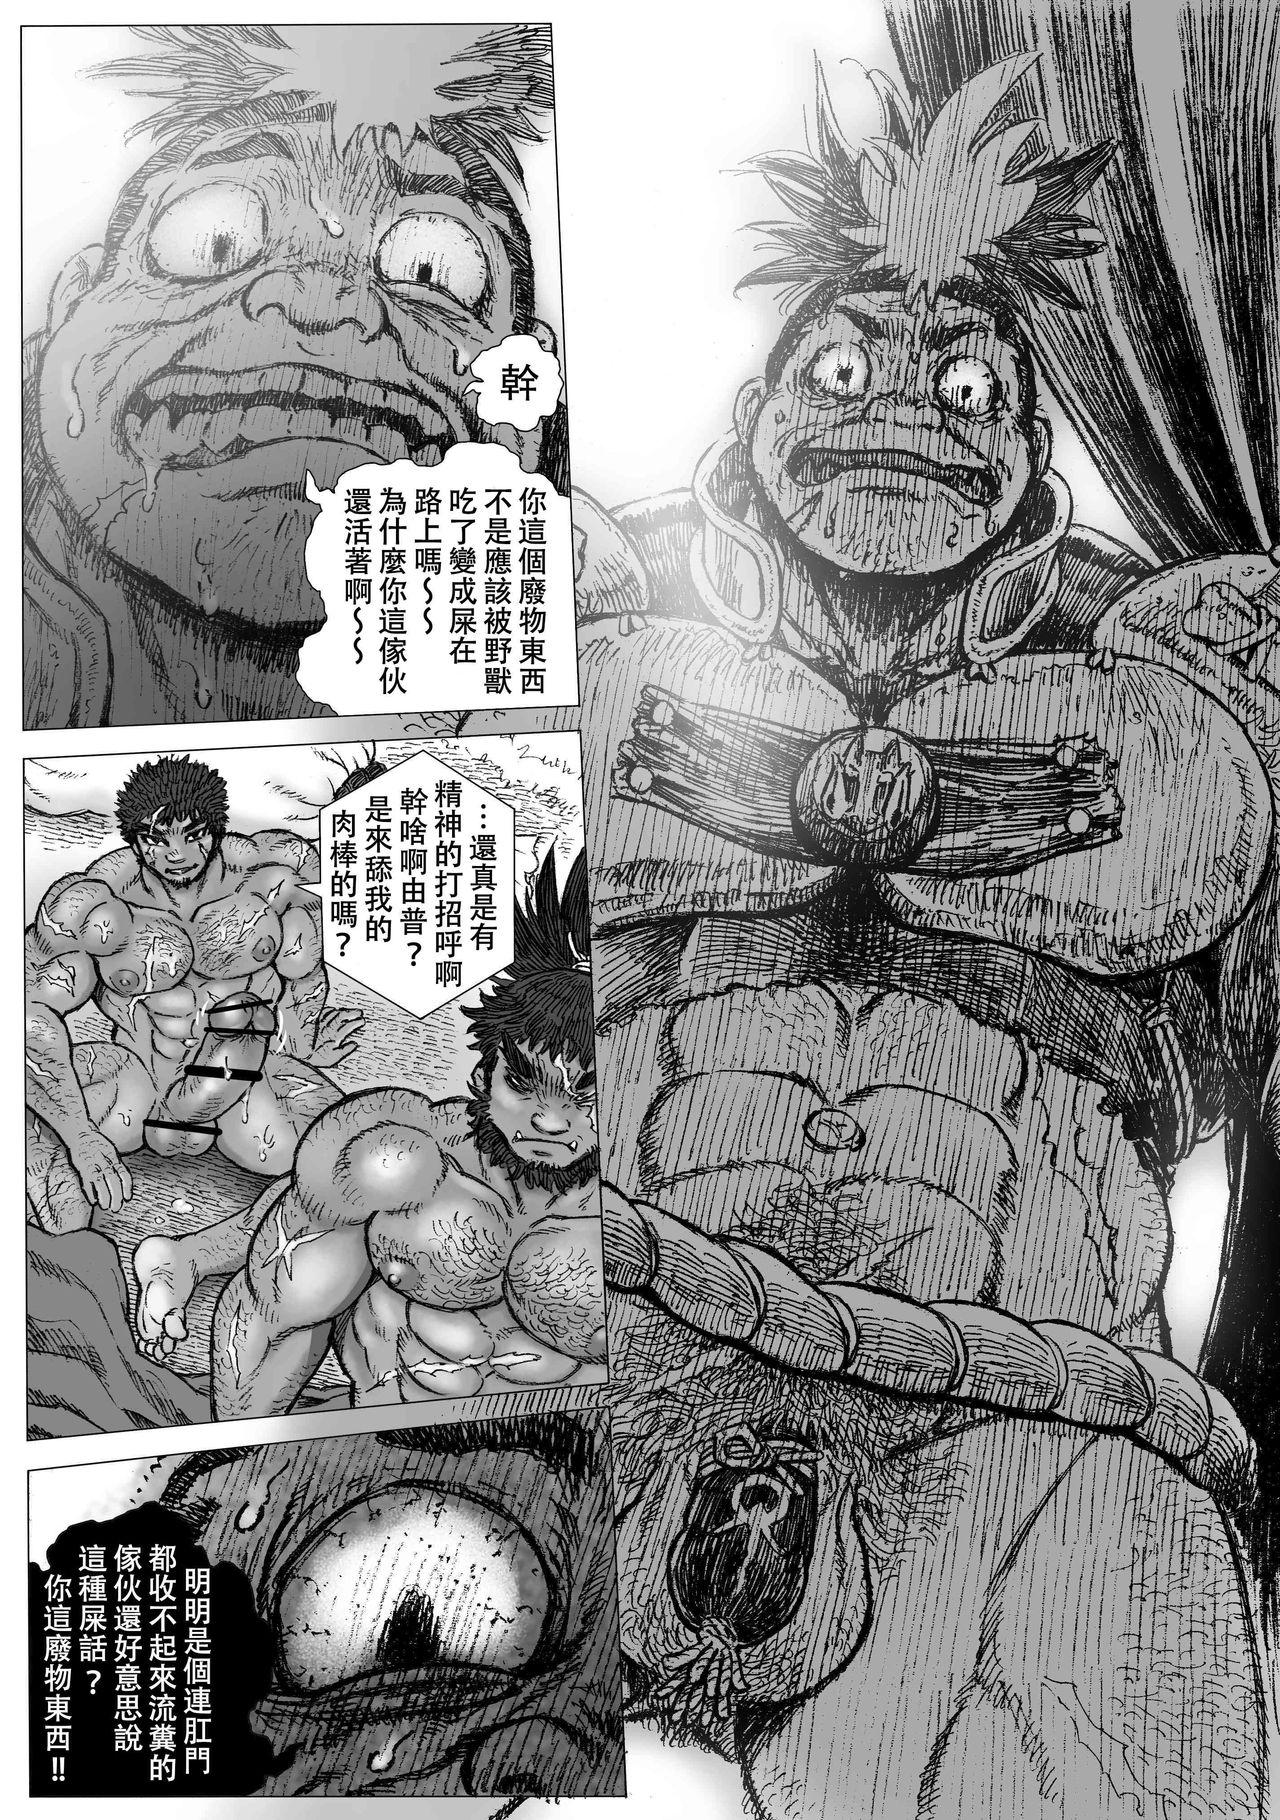 Jerk Off Hepoe no Kuni kara 16 - Original Fat - Page 4